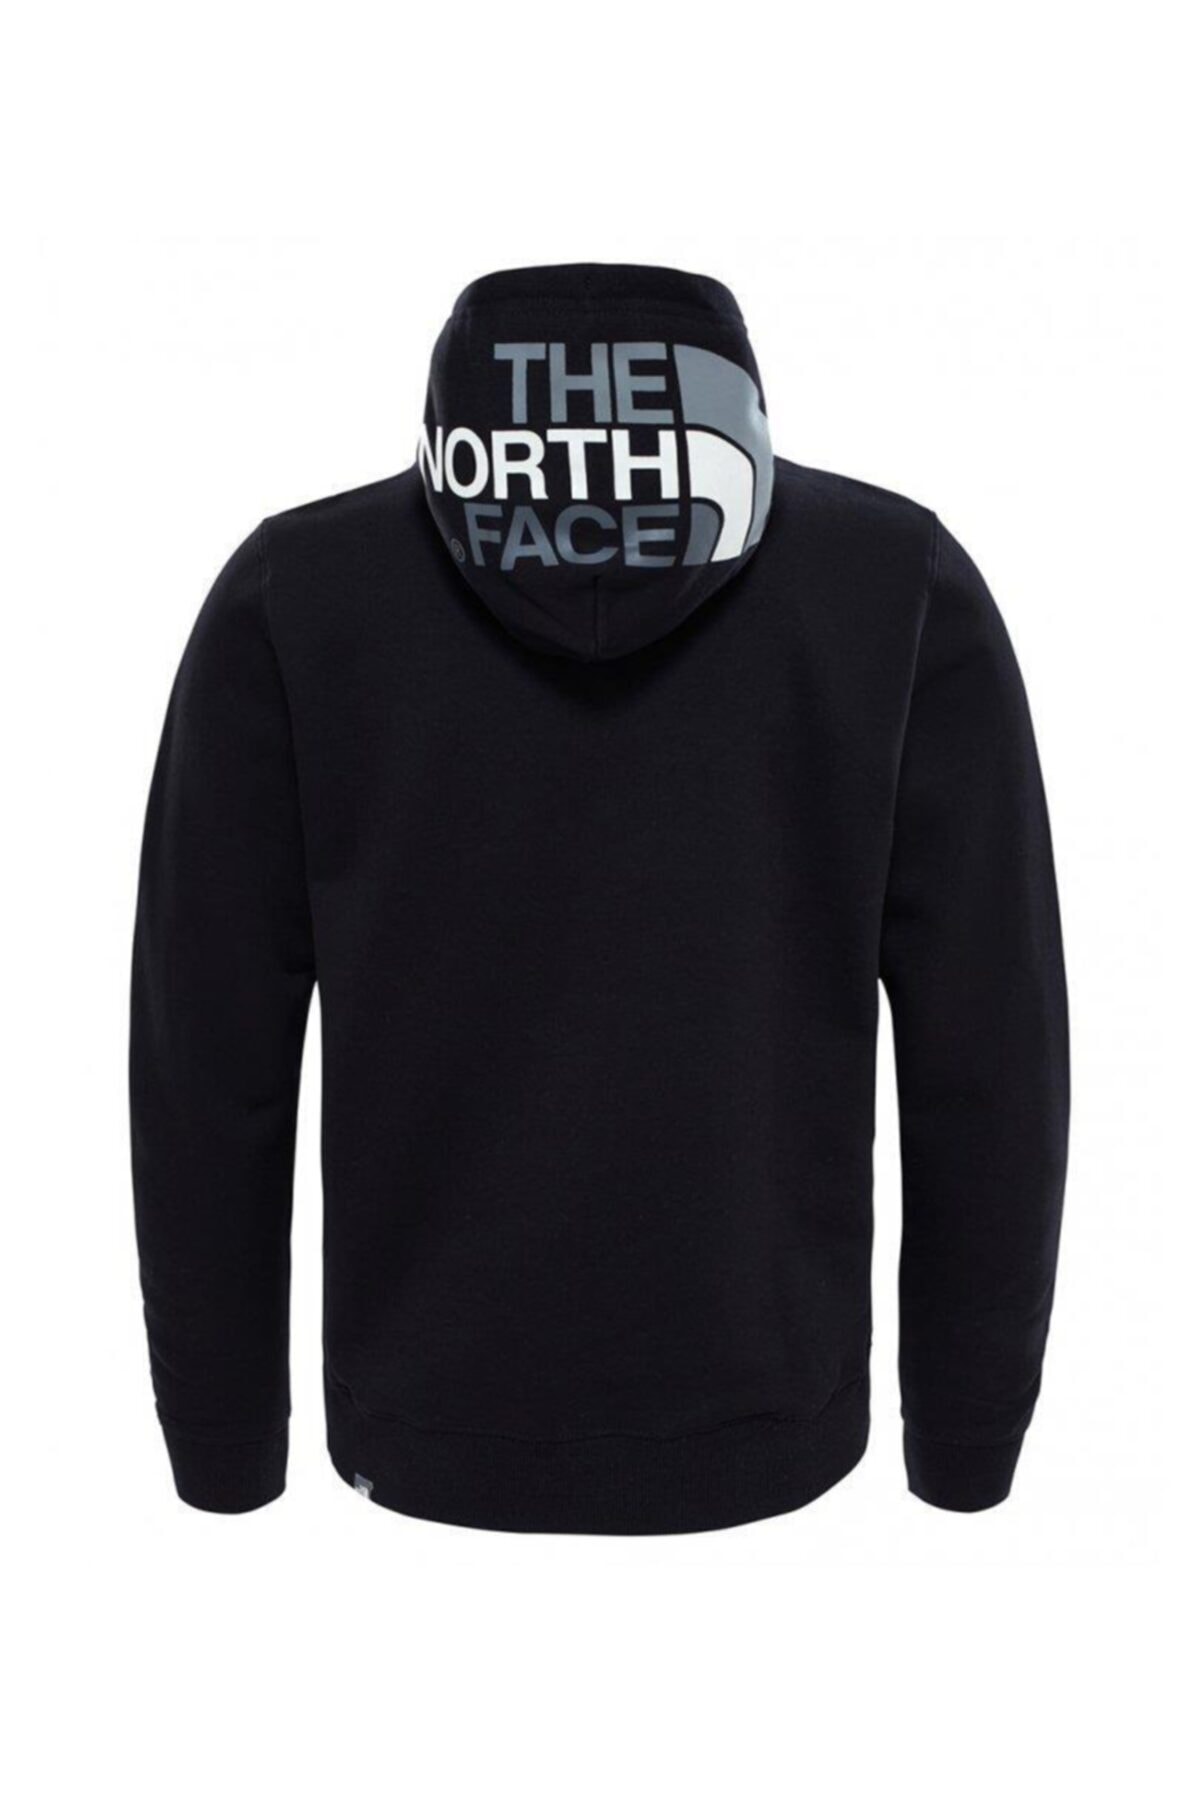 THE NORTH FACE Seas Drew Peak Hoodie Erkek Sweatshirt - T92TUVKX7 BY9198